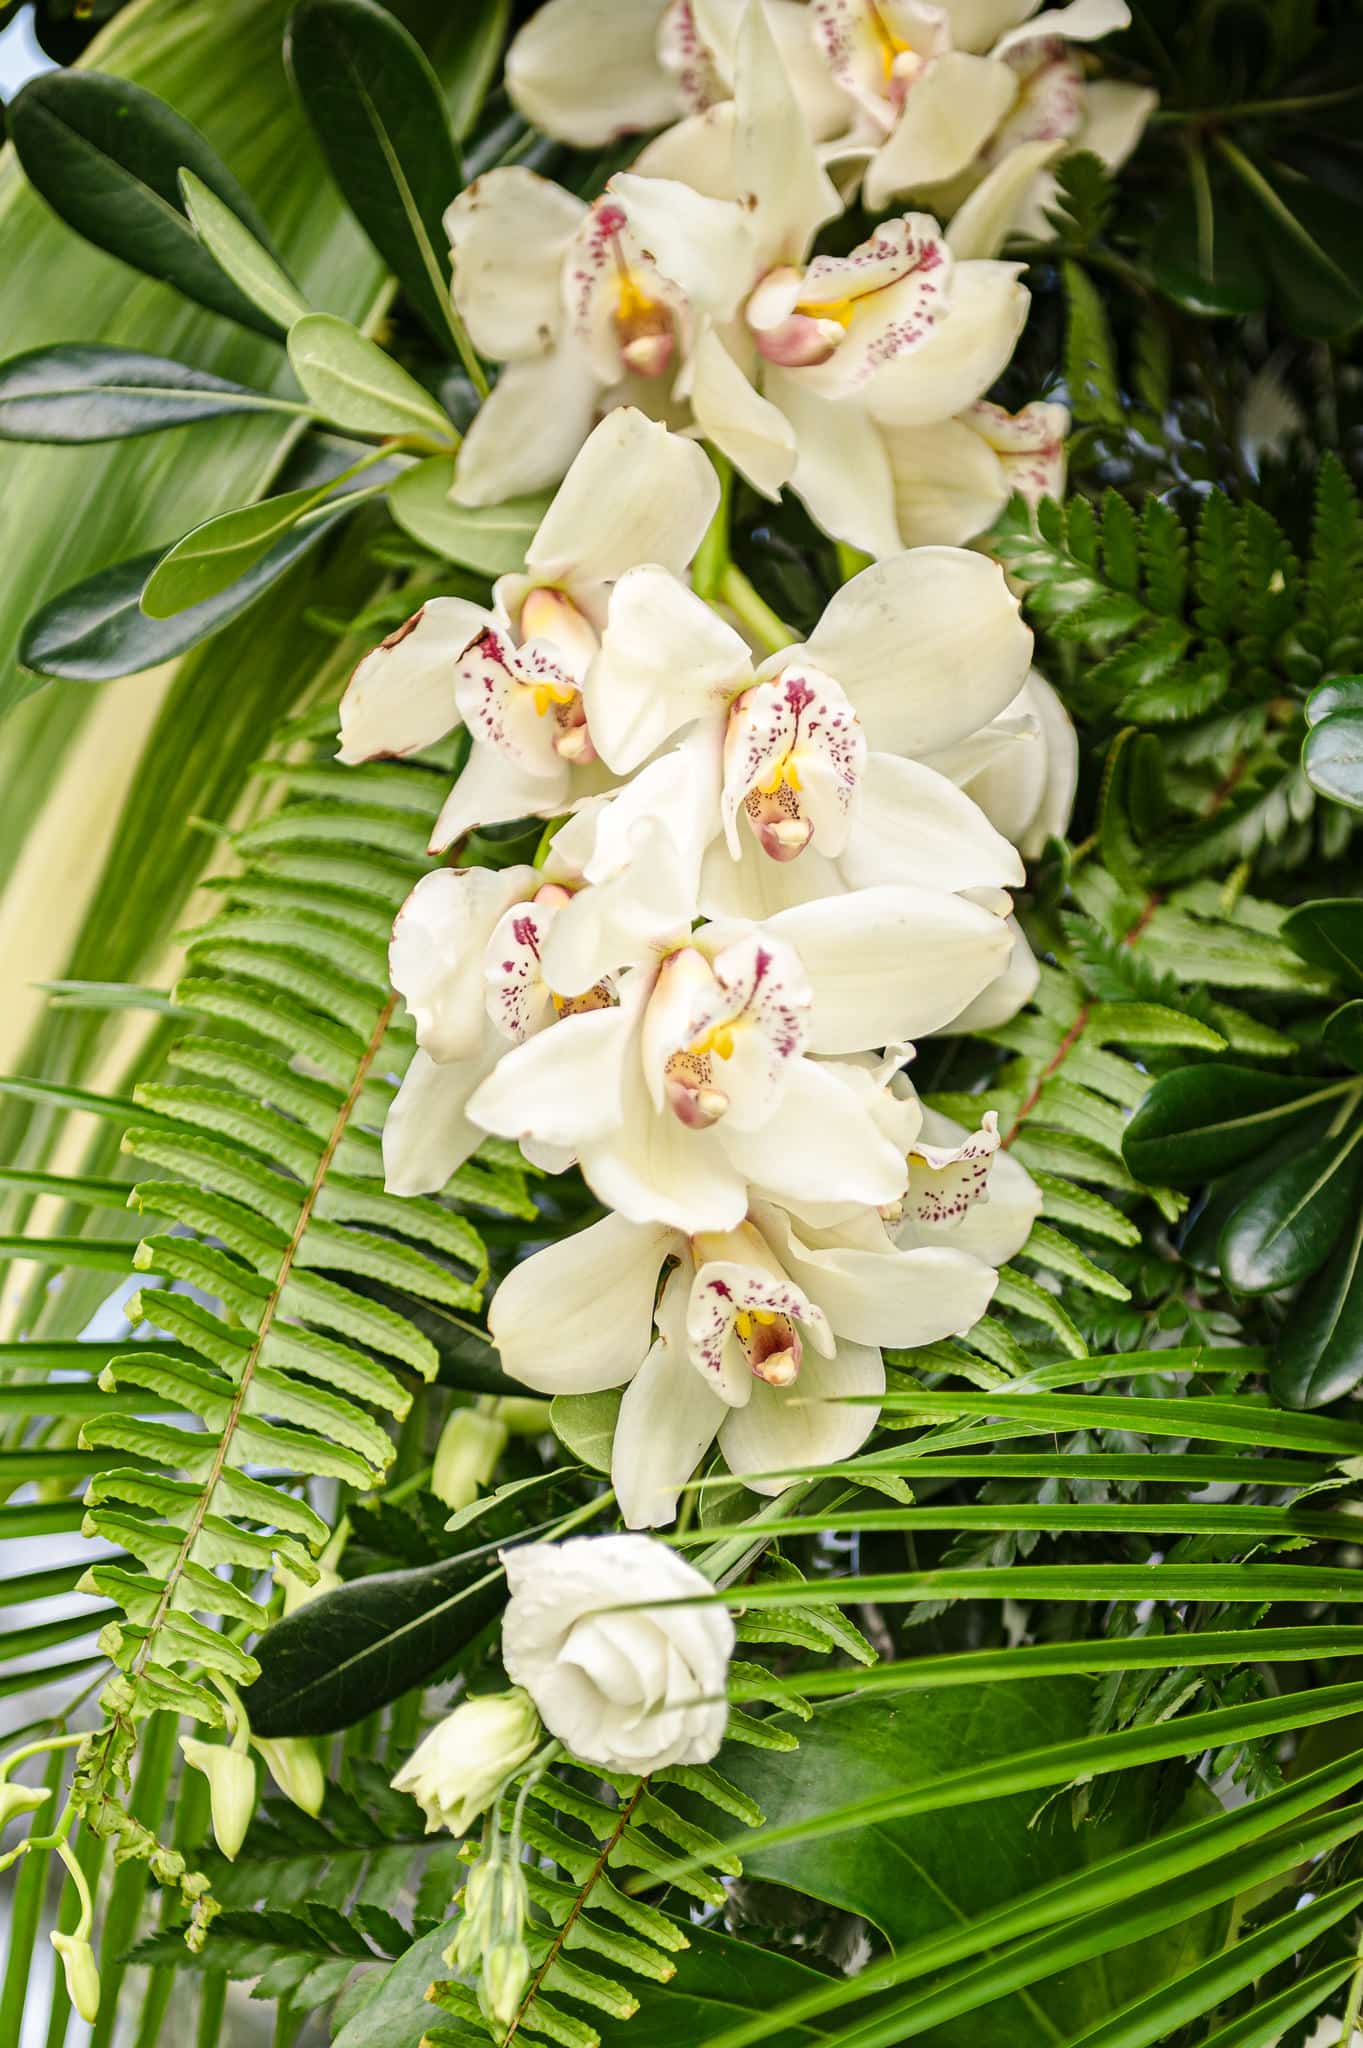 Hawaiian-inspired joyful backyard weddings include flowers like these.